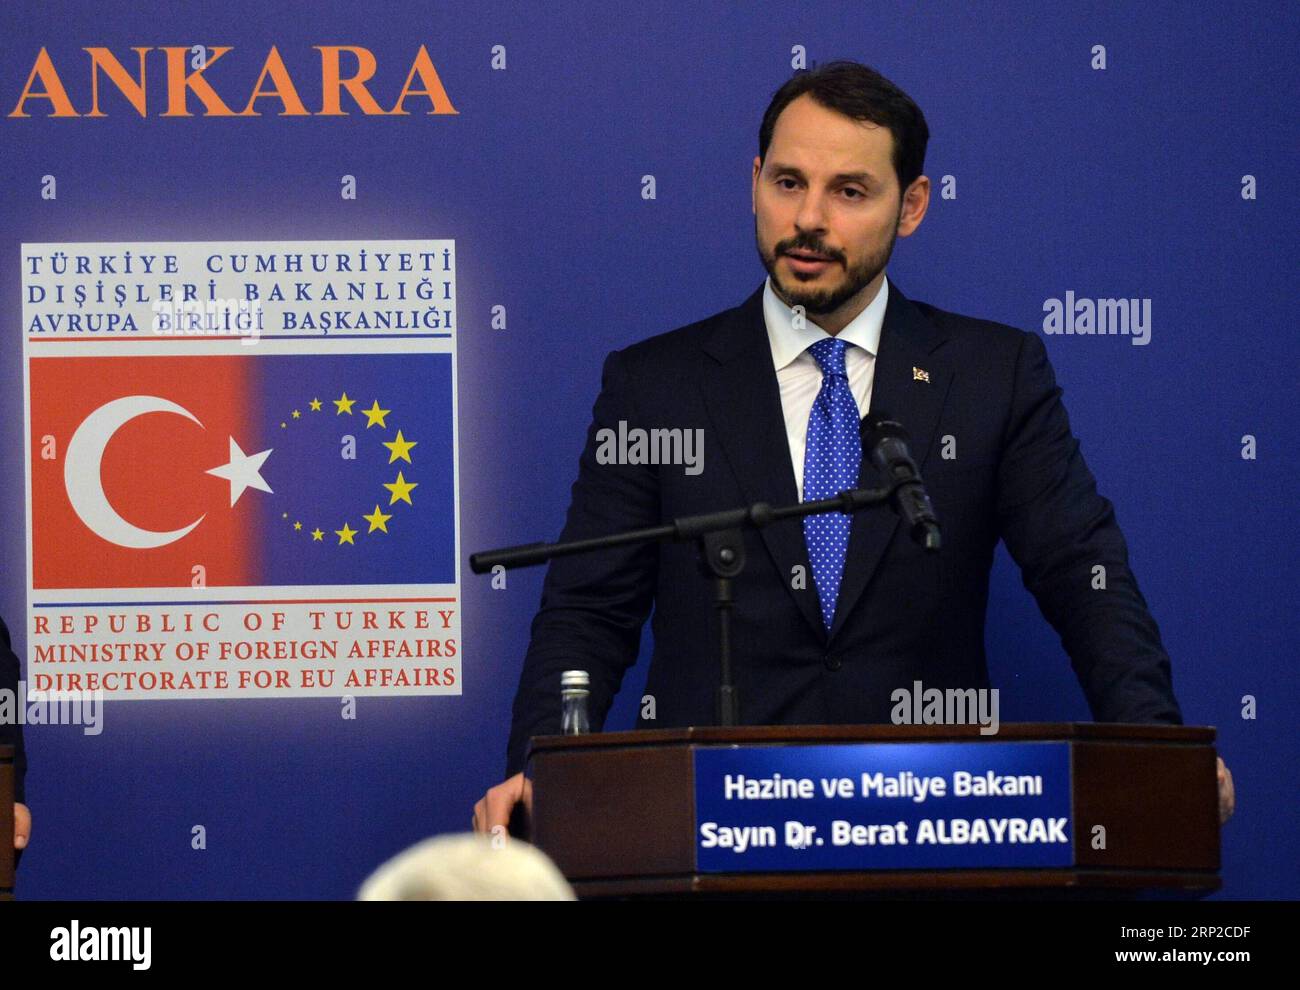 180830 -- ANKARA, le 30 août 2018 -- le ministre turc du Trésor et des Finances, Berat Albayrak, prend la parole lors d'une conférence de presse après la réunion du Groupe d'action pour la réforme de l'UE à Ankara, en Turquie, le 29 août 2018. Après un gel de près de trois ans, le gouvernement turc a rencontré mercredi les ministres du Groupe d’action pour la réforme de l’UE pour intensifier son programme de reservation des liens avec le bloc voisin. gj TURQUIE-ANKARA-UE-RÉUNION MustafaxKaya PUBLICATIONxNOTxINxCHN Banque D'Images